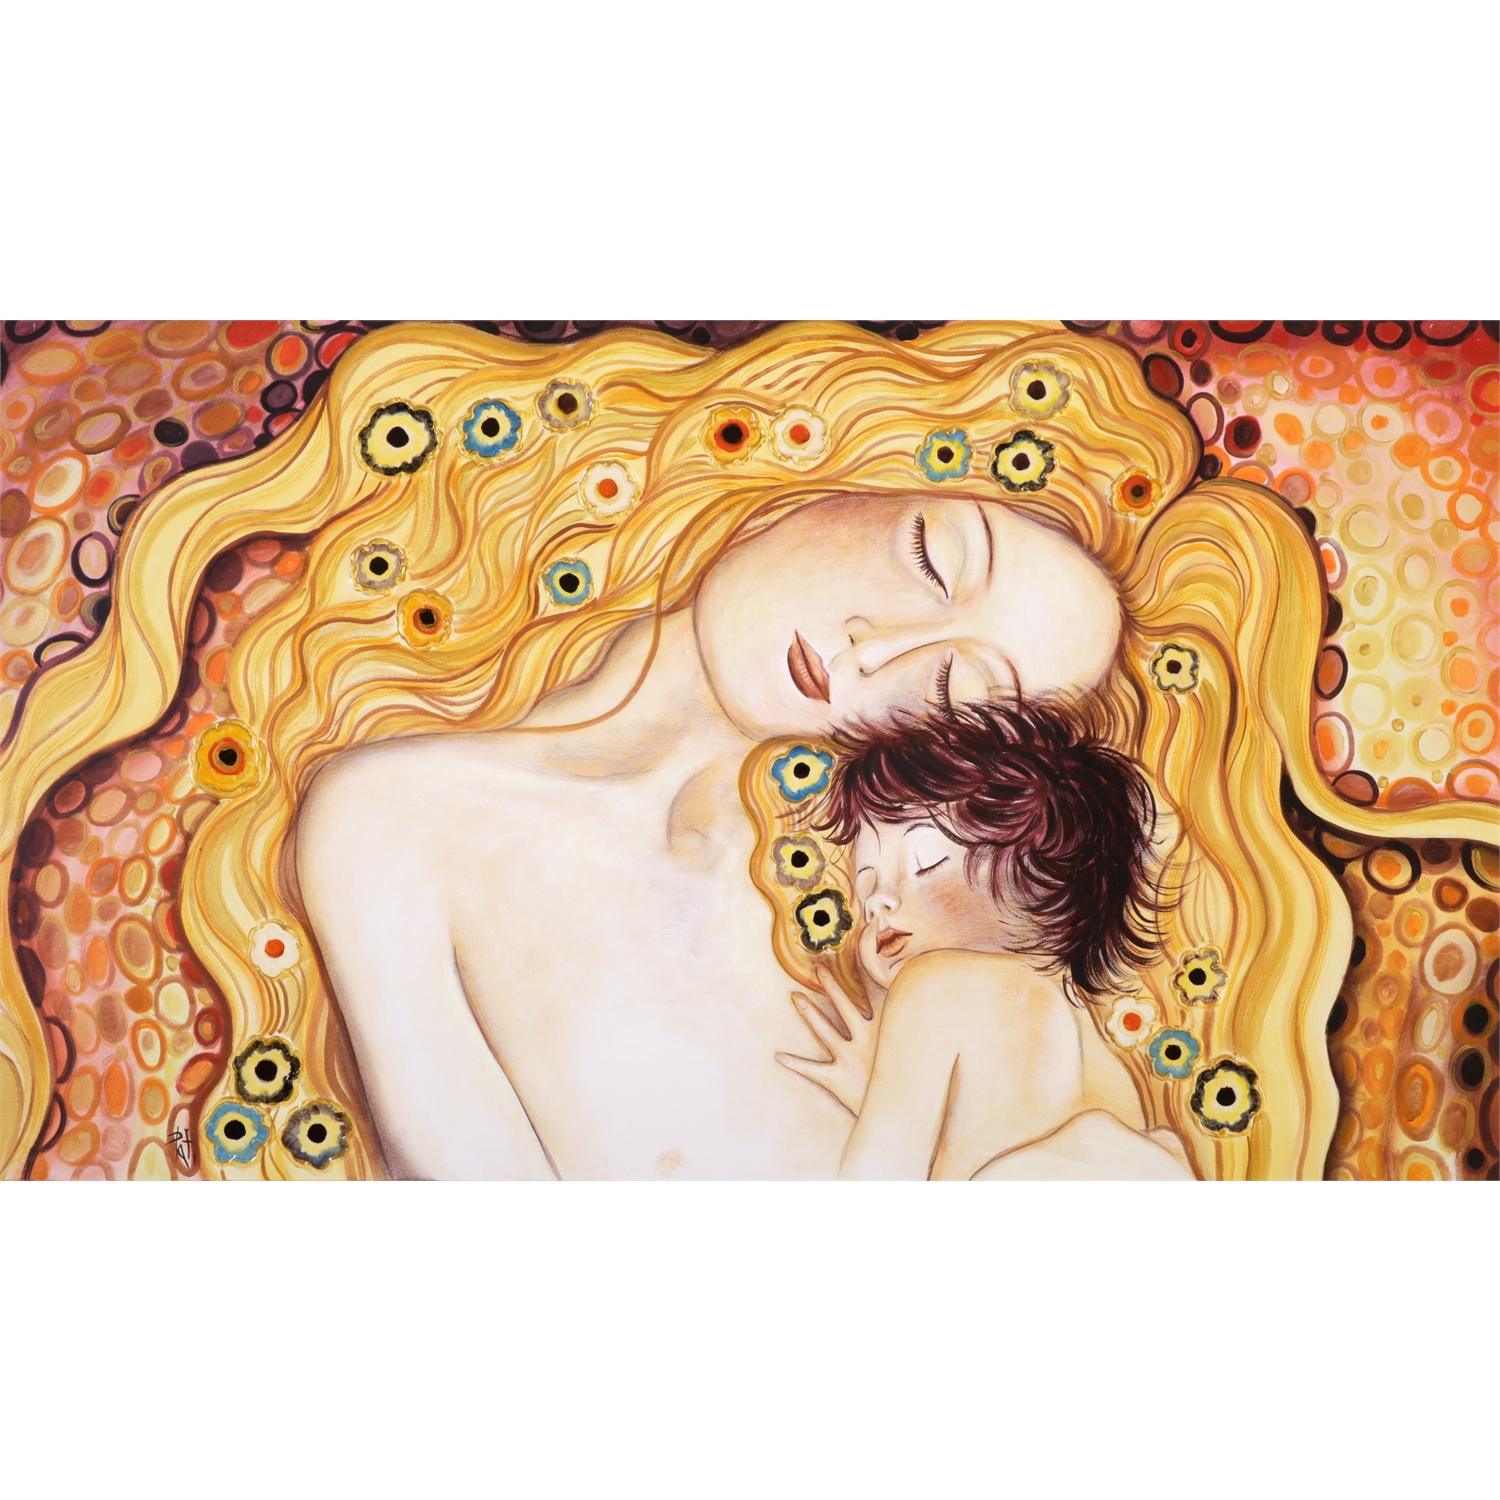 TramArt quadro moderno con maternità di Klimt Arancio